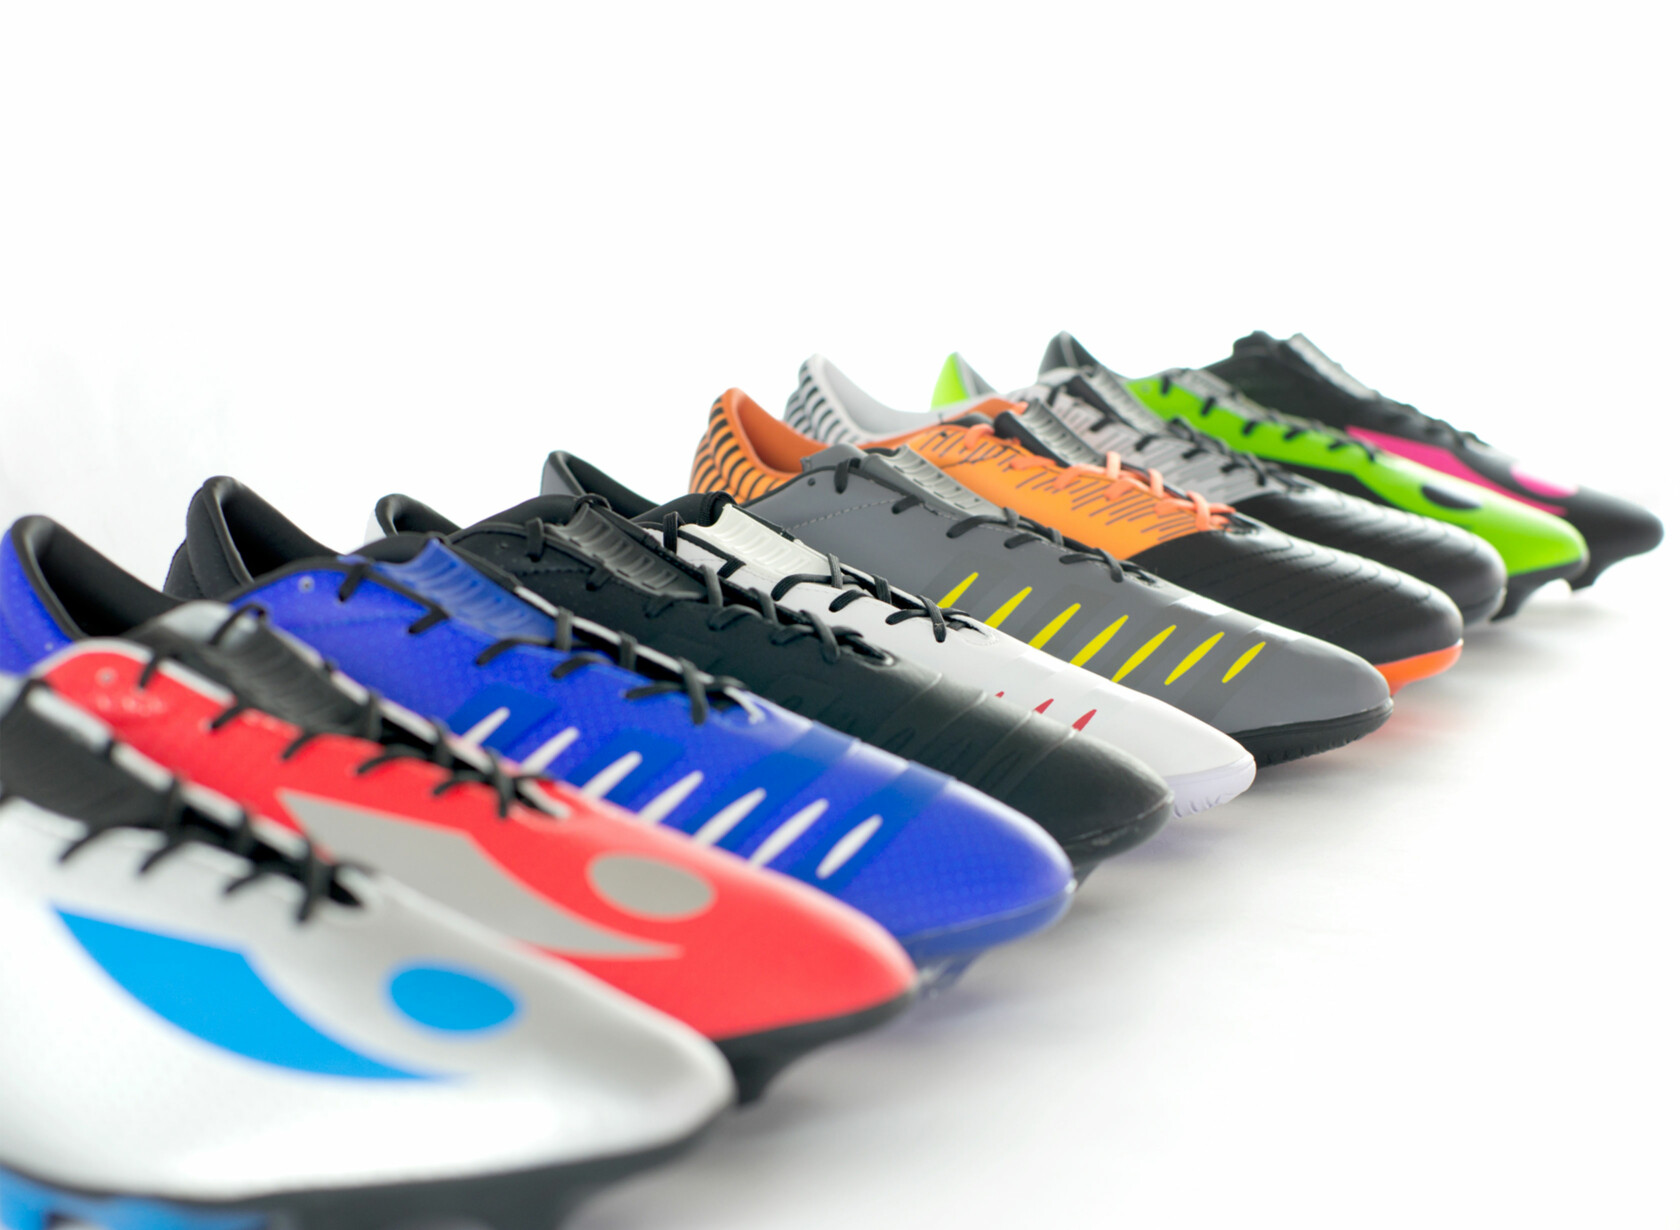 Large collection of Concave Boot designs, each with a unique colour scheme